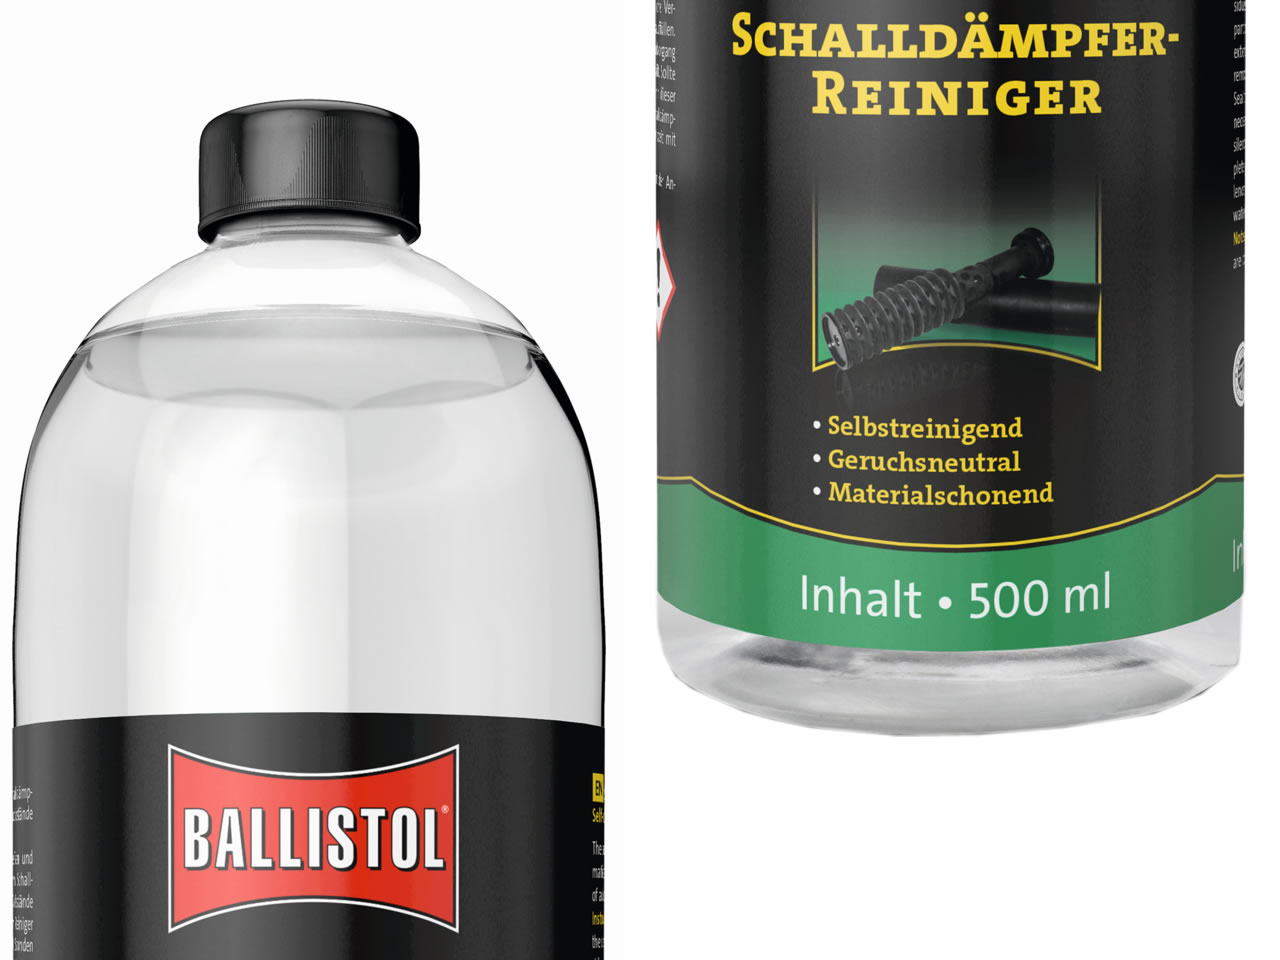 Ballistol Schalldämpferreiniger, reinigt selbsttätig ohne Demontage, 500 ml